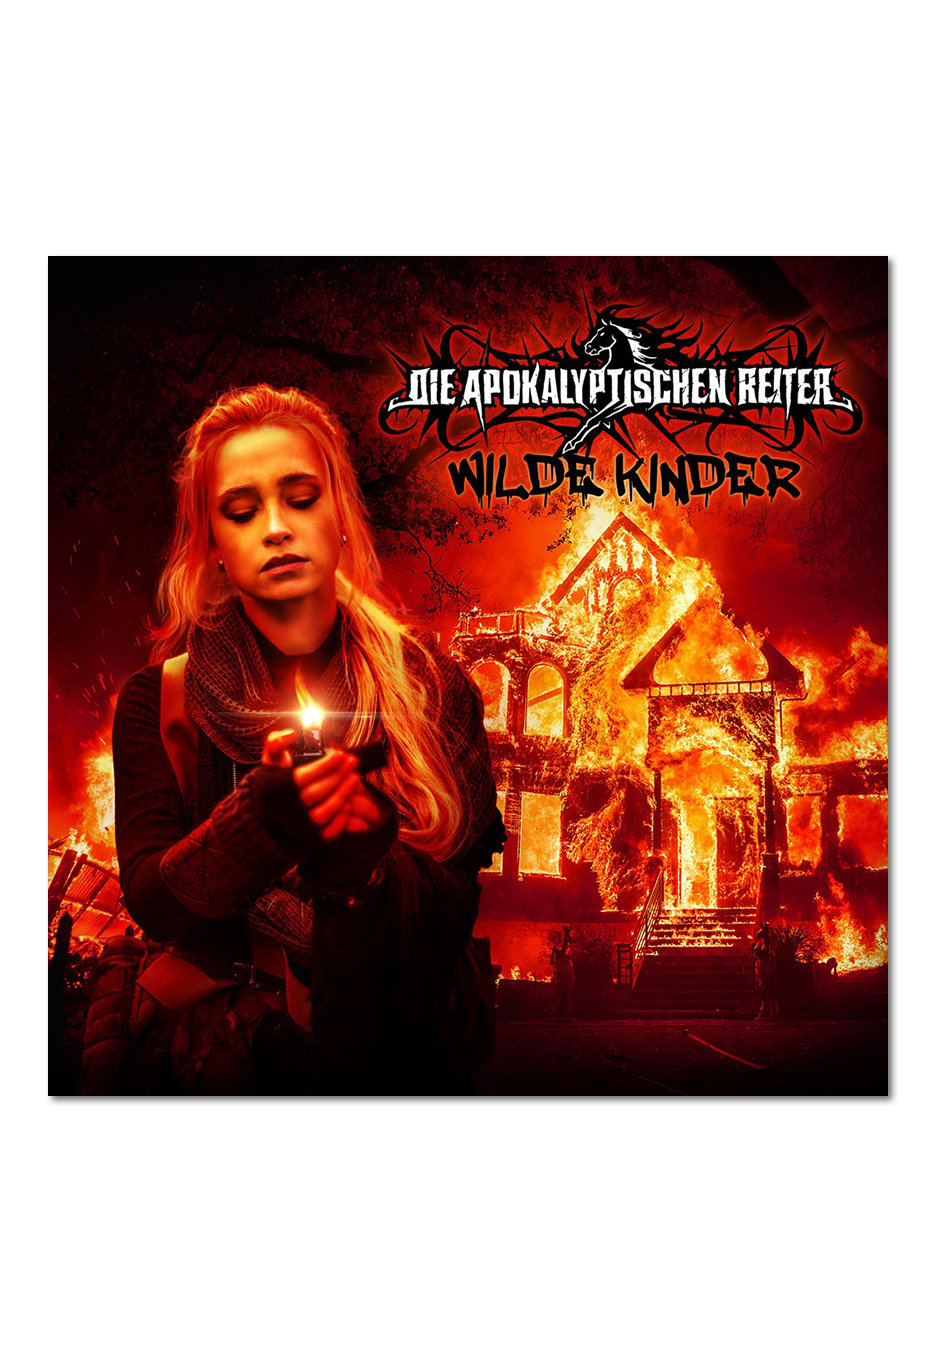 Die Apokalyptischen Reiter - Wilde Kinder - Digipak CD